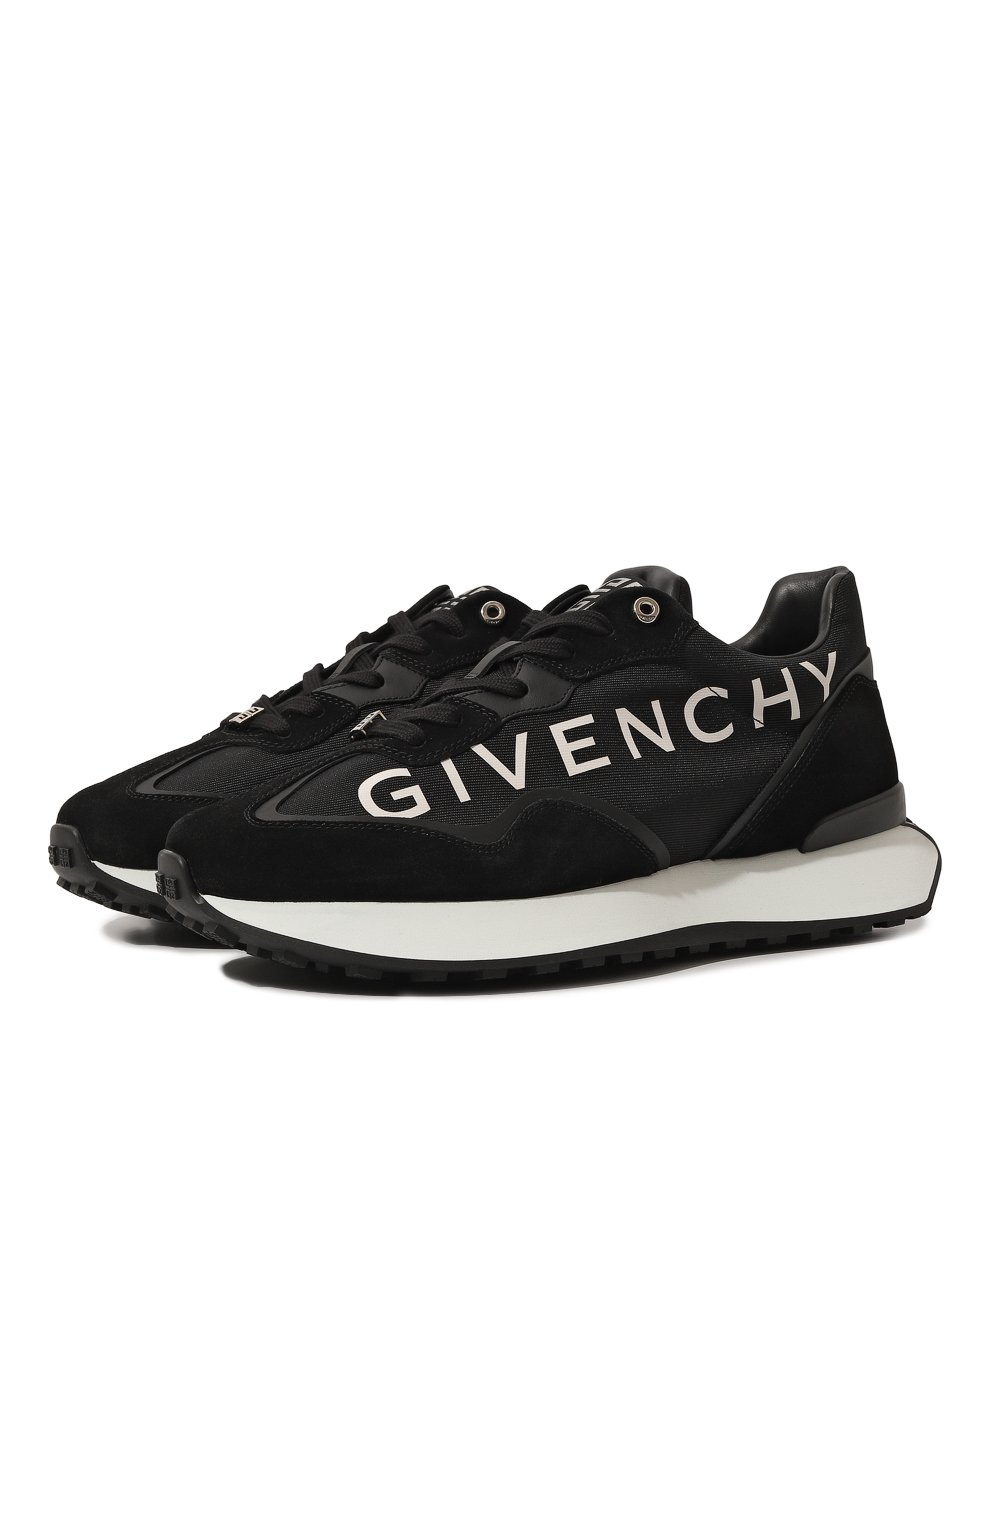 Кроссовки и кеды Givenchy, Комбинированные кроссовки GIV Runner Givenchy, Италия, Чёрный, Кожа: 100%; Подкладка-кожа: 100%; Подкладка-текстиль: 100%; Подошва-резина: 100%; Отделка-нейлон: 100%;, 13377213  - купить